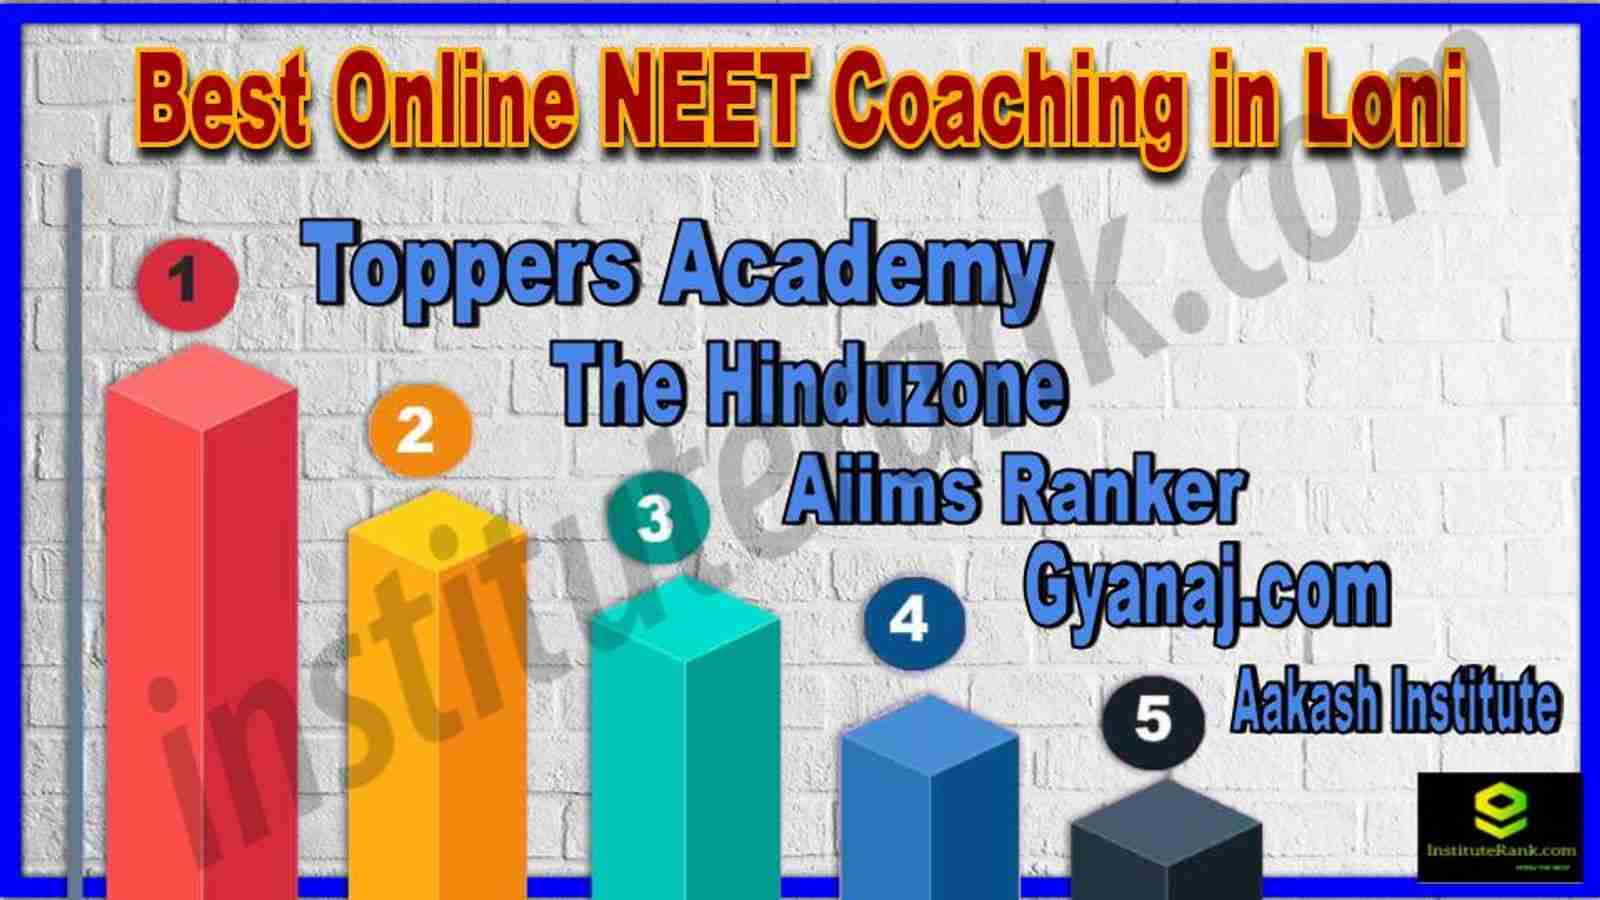 Best Online NEET Coaching in Loni